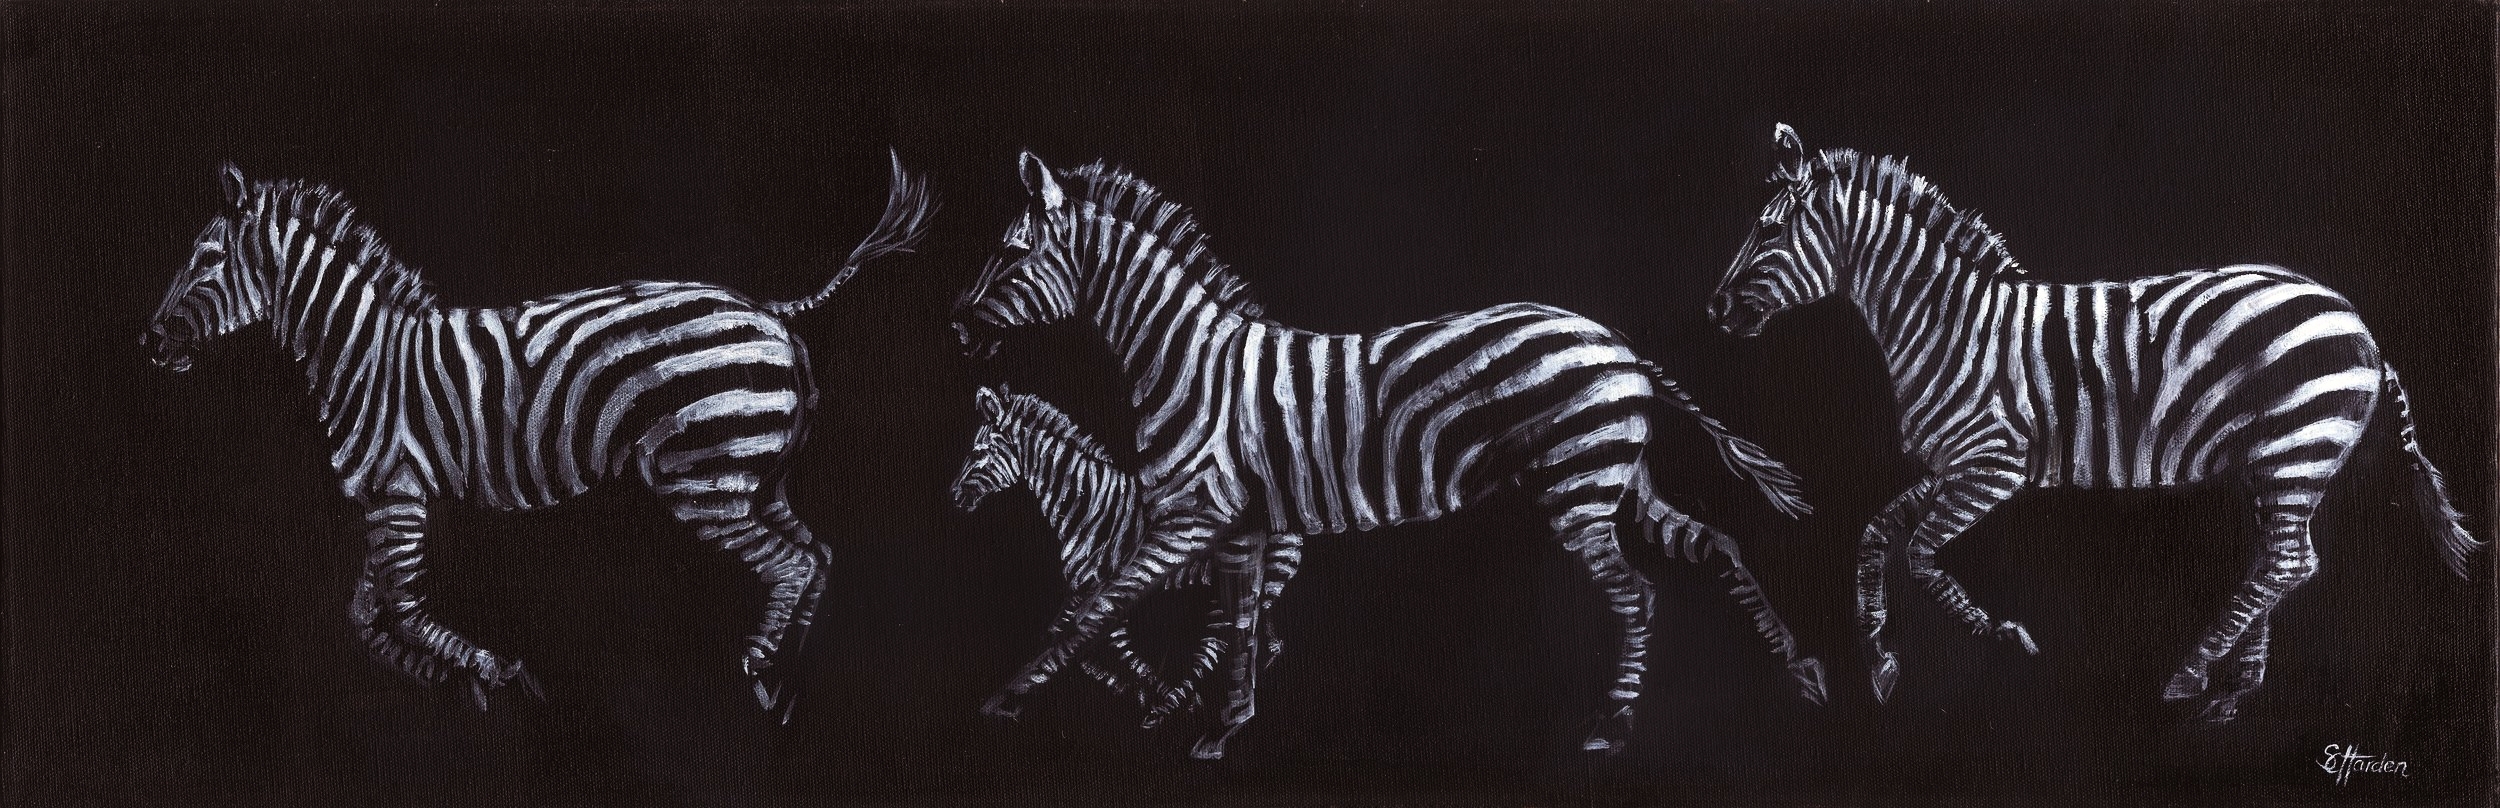 harden zebra